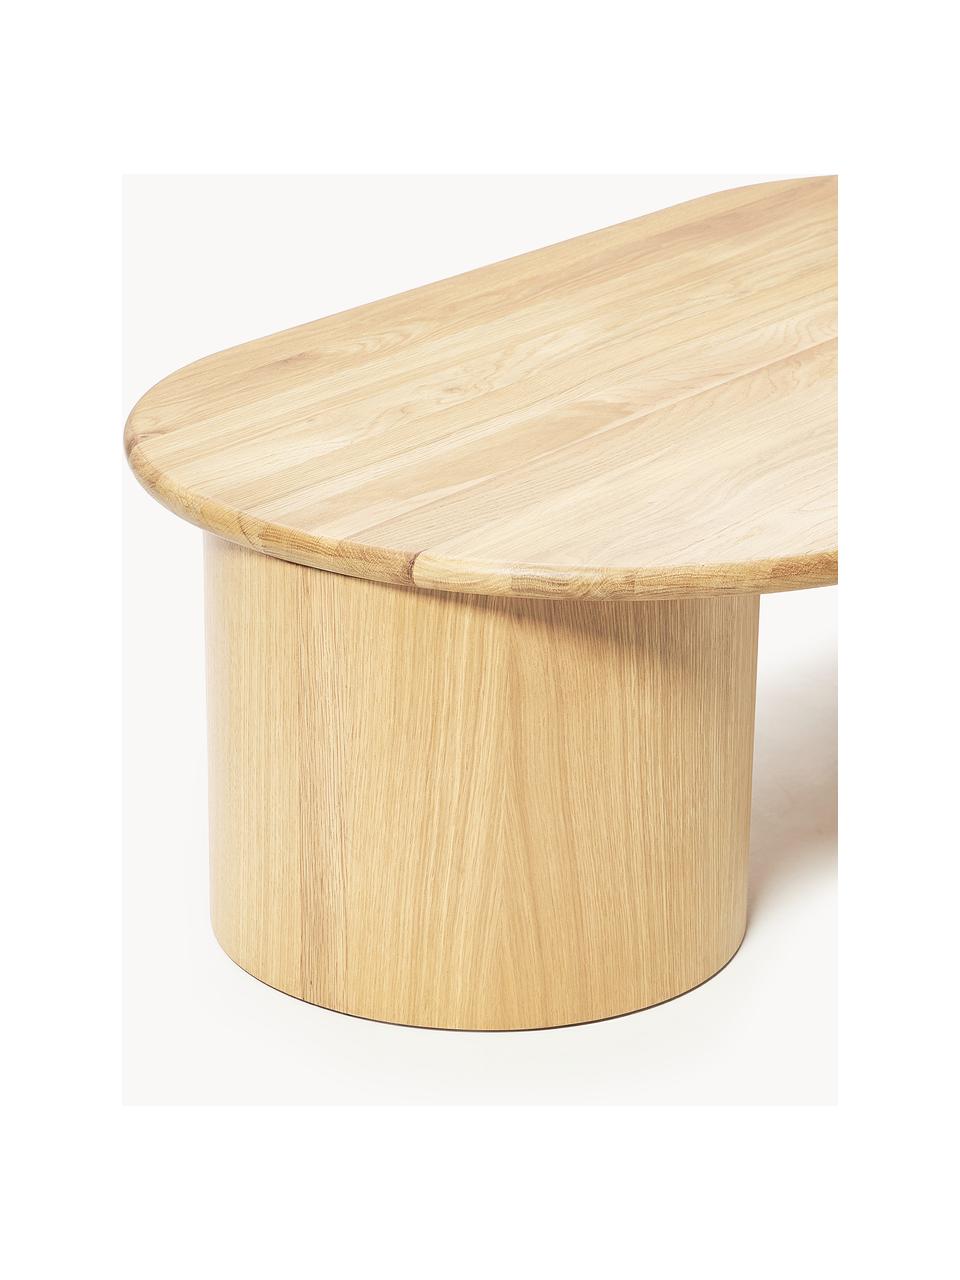 Table basse ovale en chêne Didi, Bois de chêne huilé

Ce produit est fabriqué à partir de bois certifié FSC® issu d'une exploitation durable, Bois de chêne, larg. 140 x prof. 70 cm